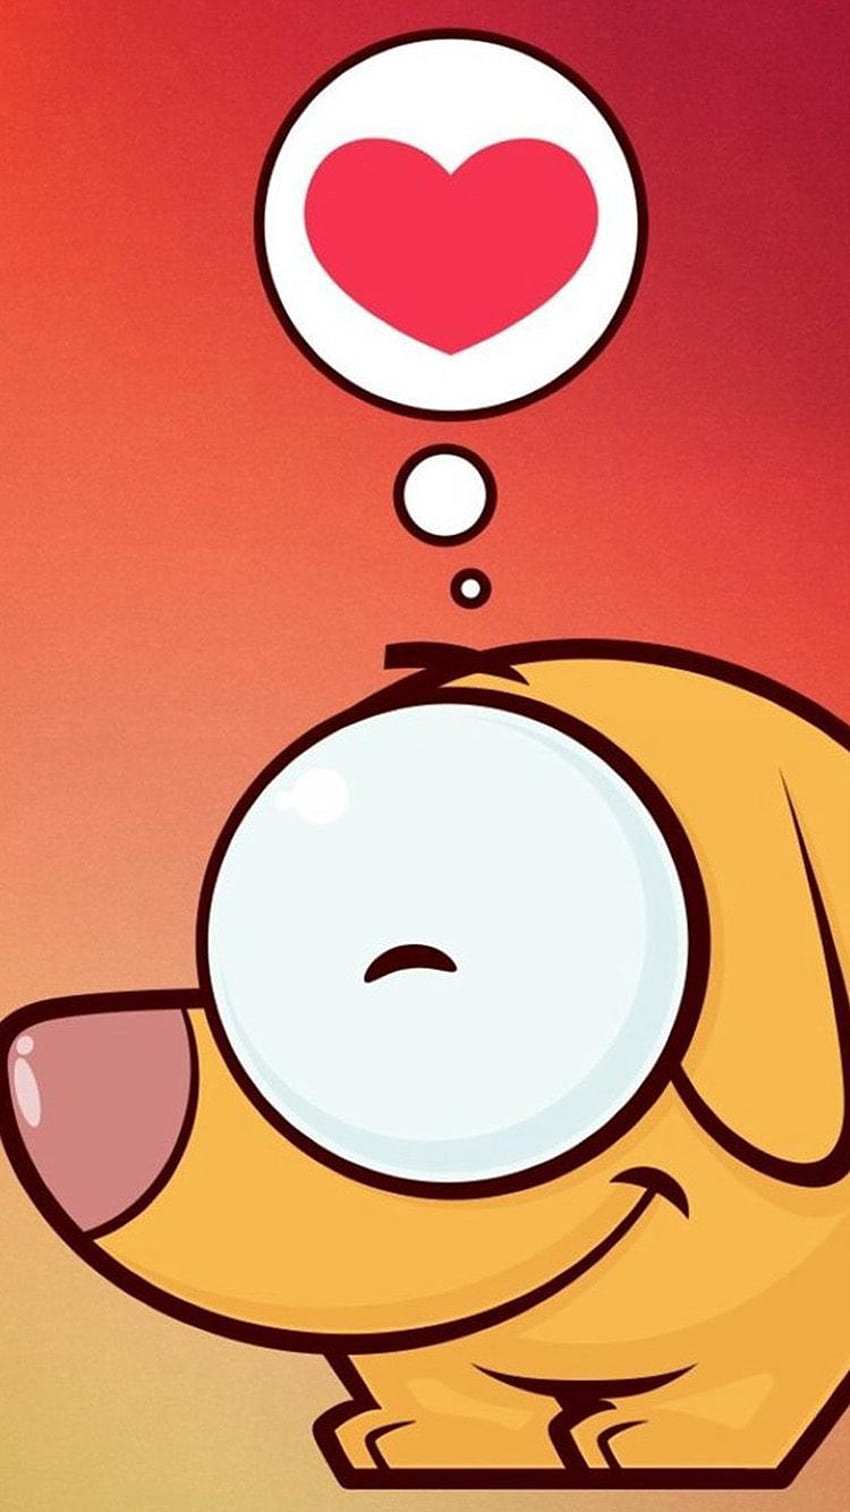 âTOCCA E SCARICA L'APP! Cartoni animati divertenti Love Ombre Heart Orange Red iPhone 5 Wallpape. Android , Ama l'animazione , Fantastico per i telefoni Sfondo del telefono HD